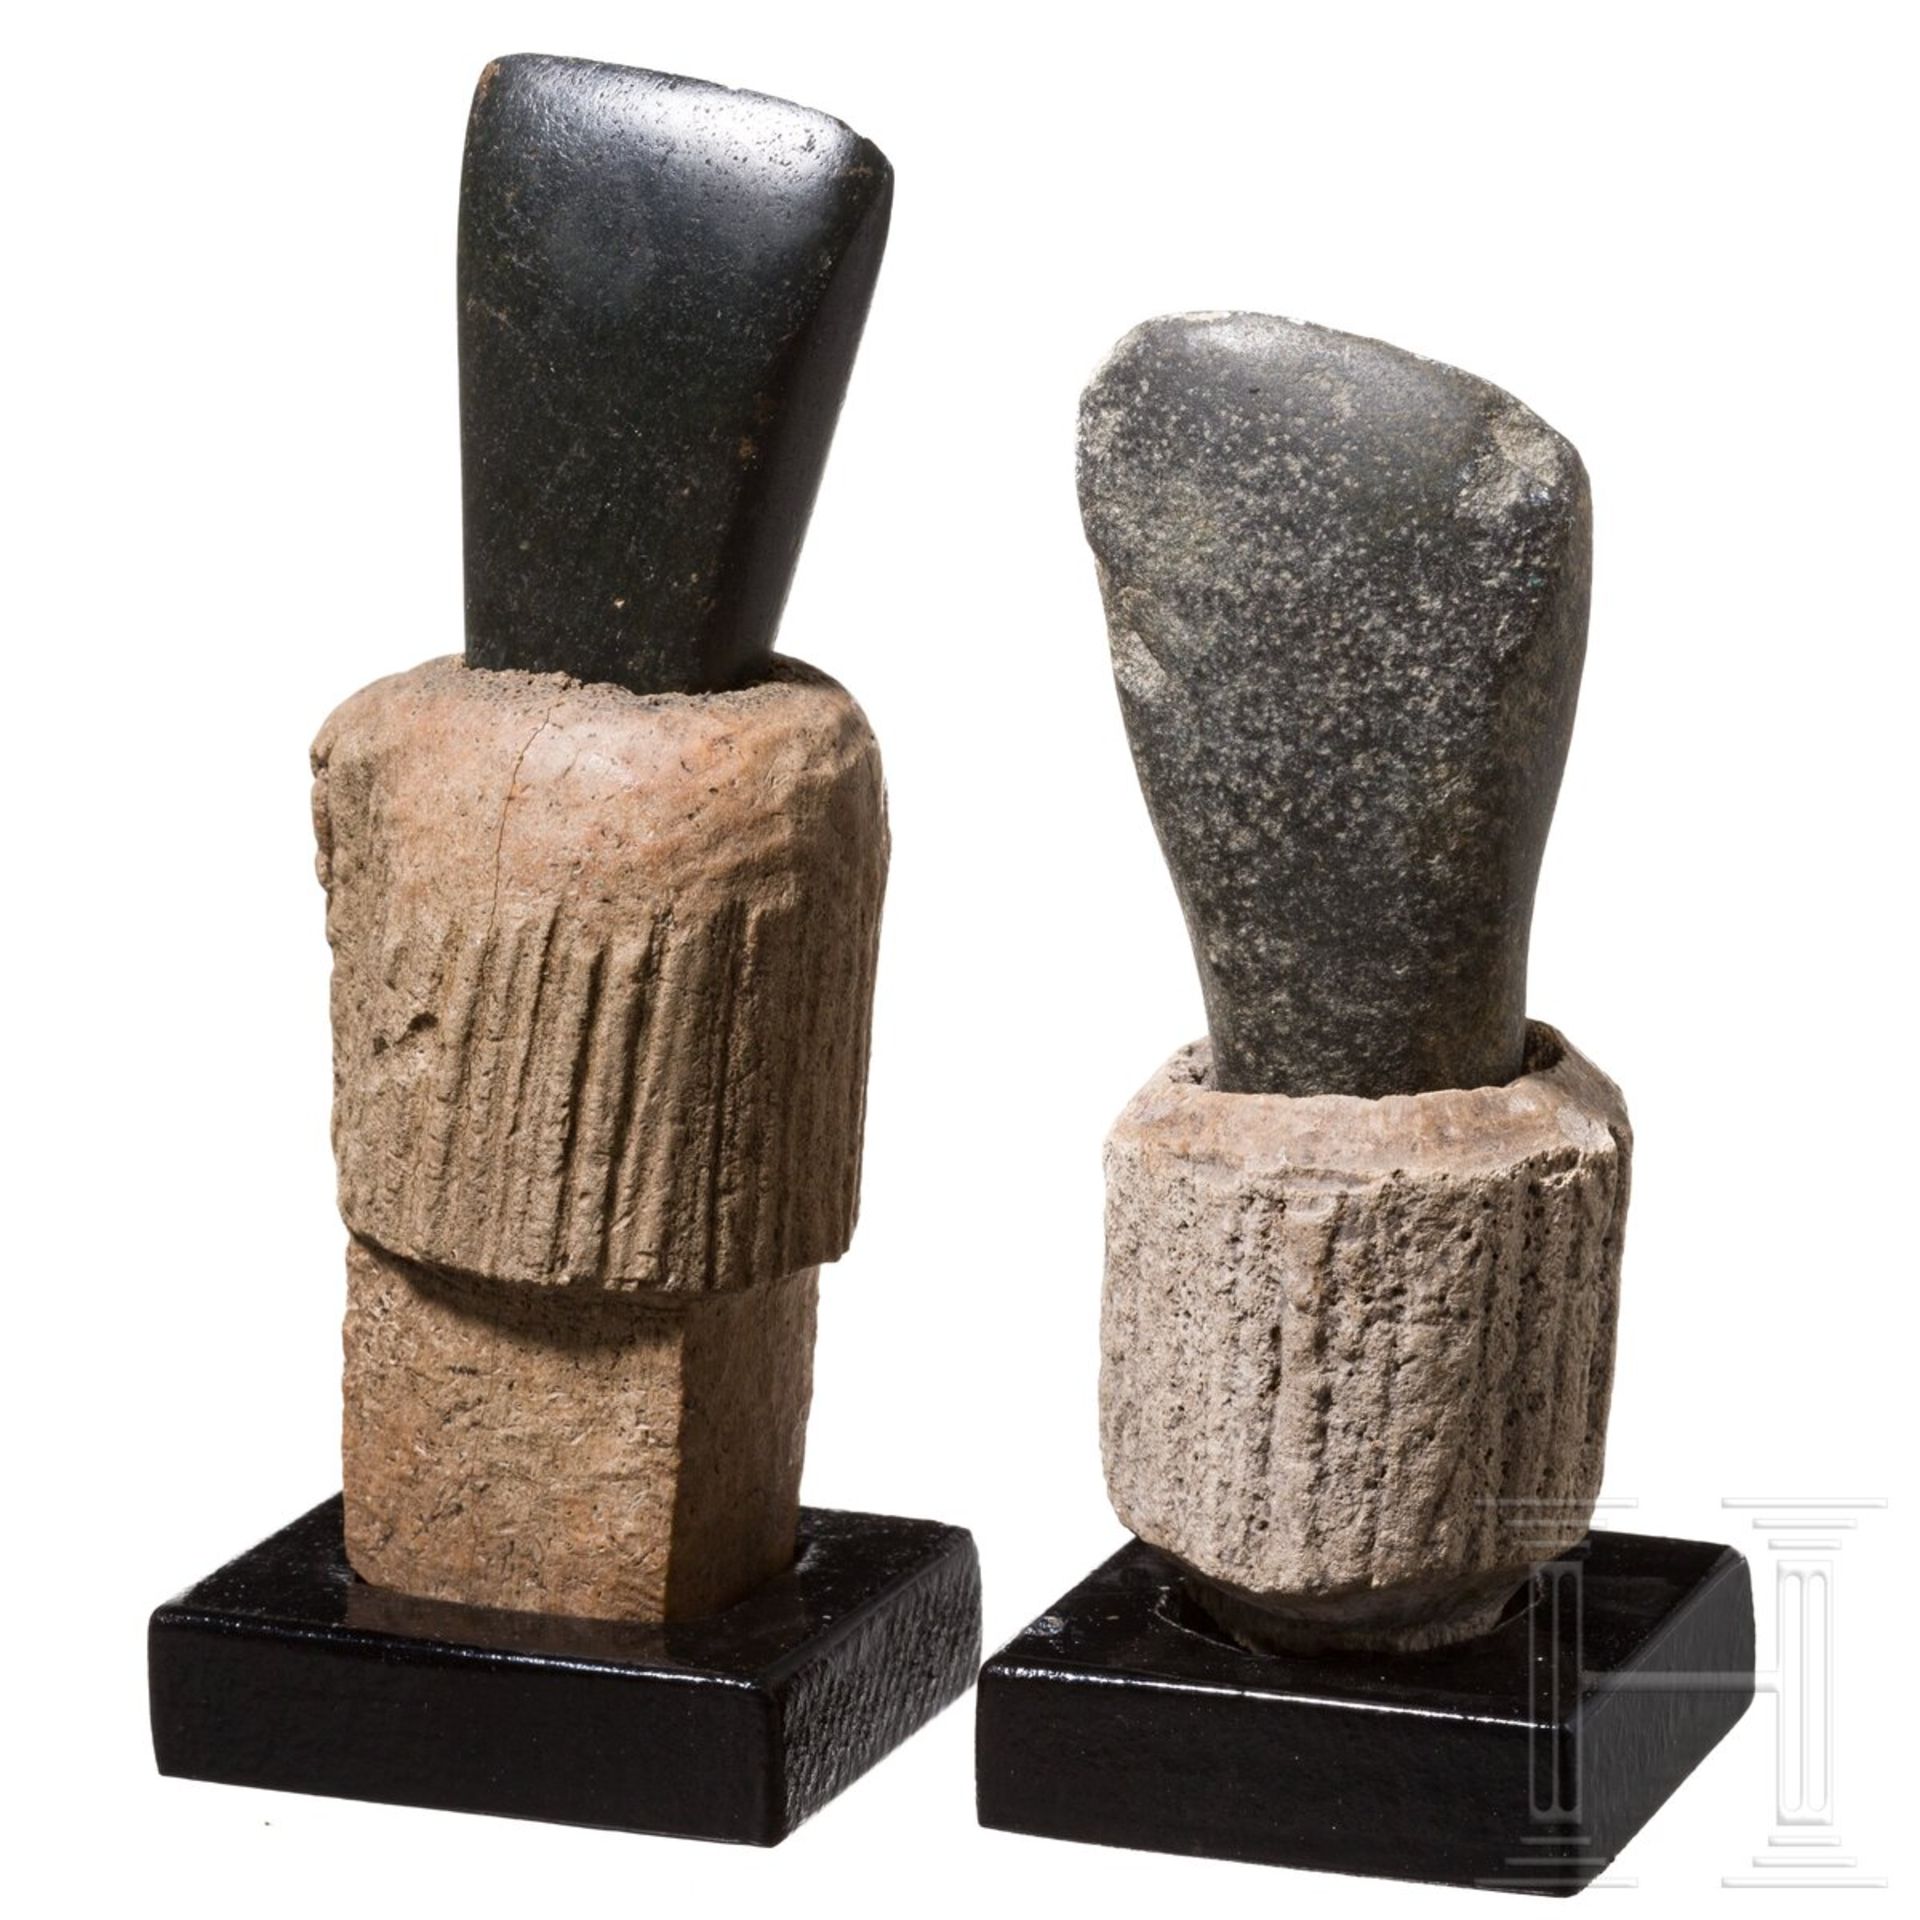 Zwei stumpfnackige Steinbeilklingen mit zugehörigem Geweihfutter, mittlere Jungsteinzeit Mitteleurop